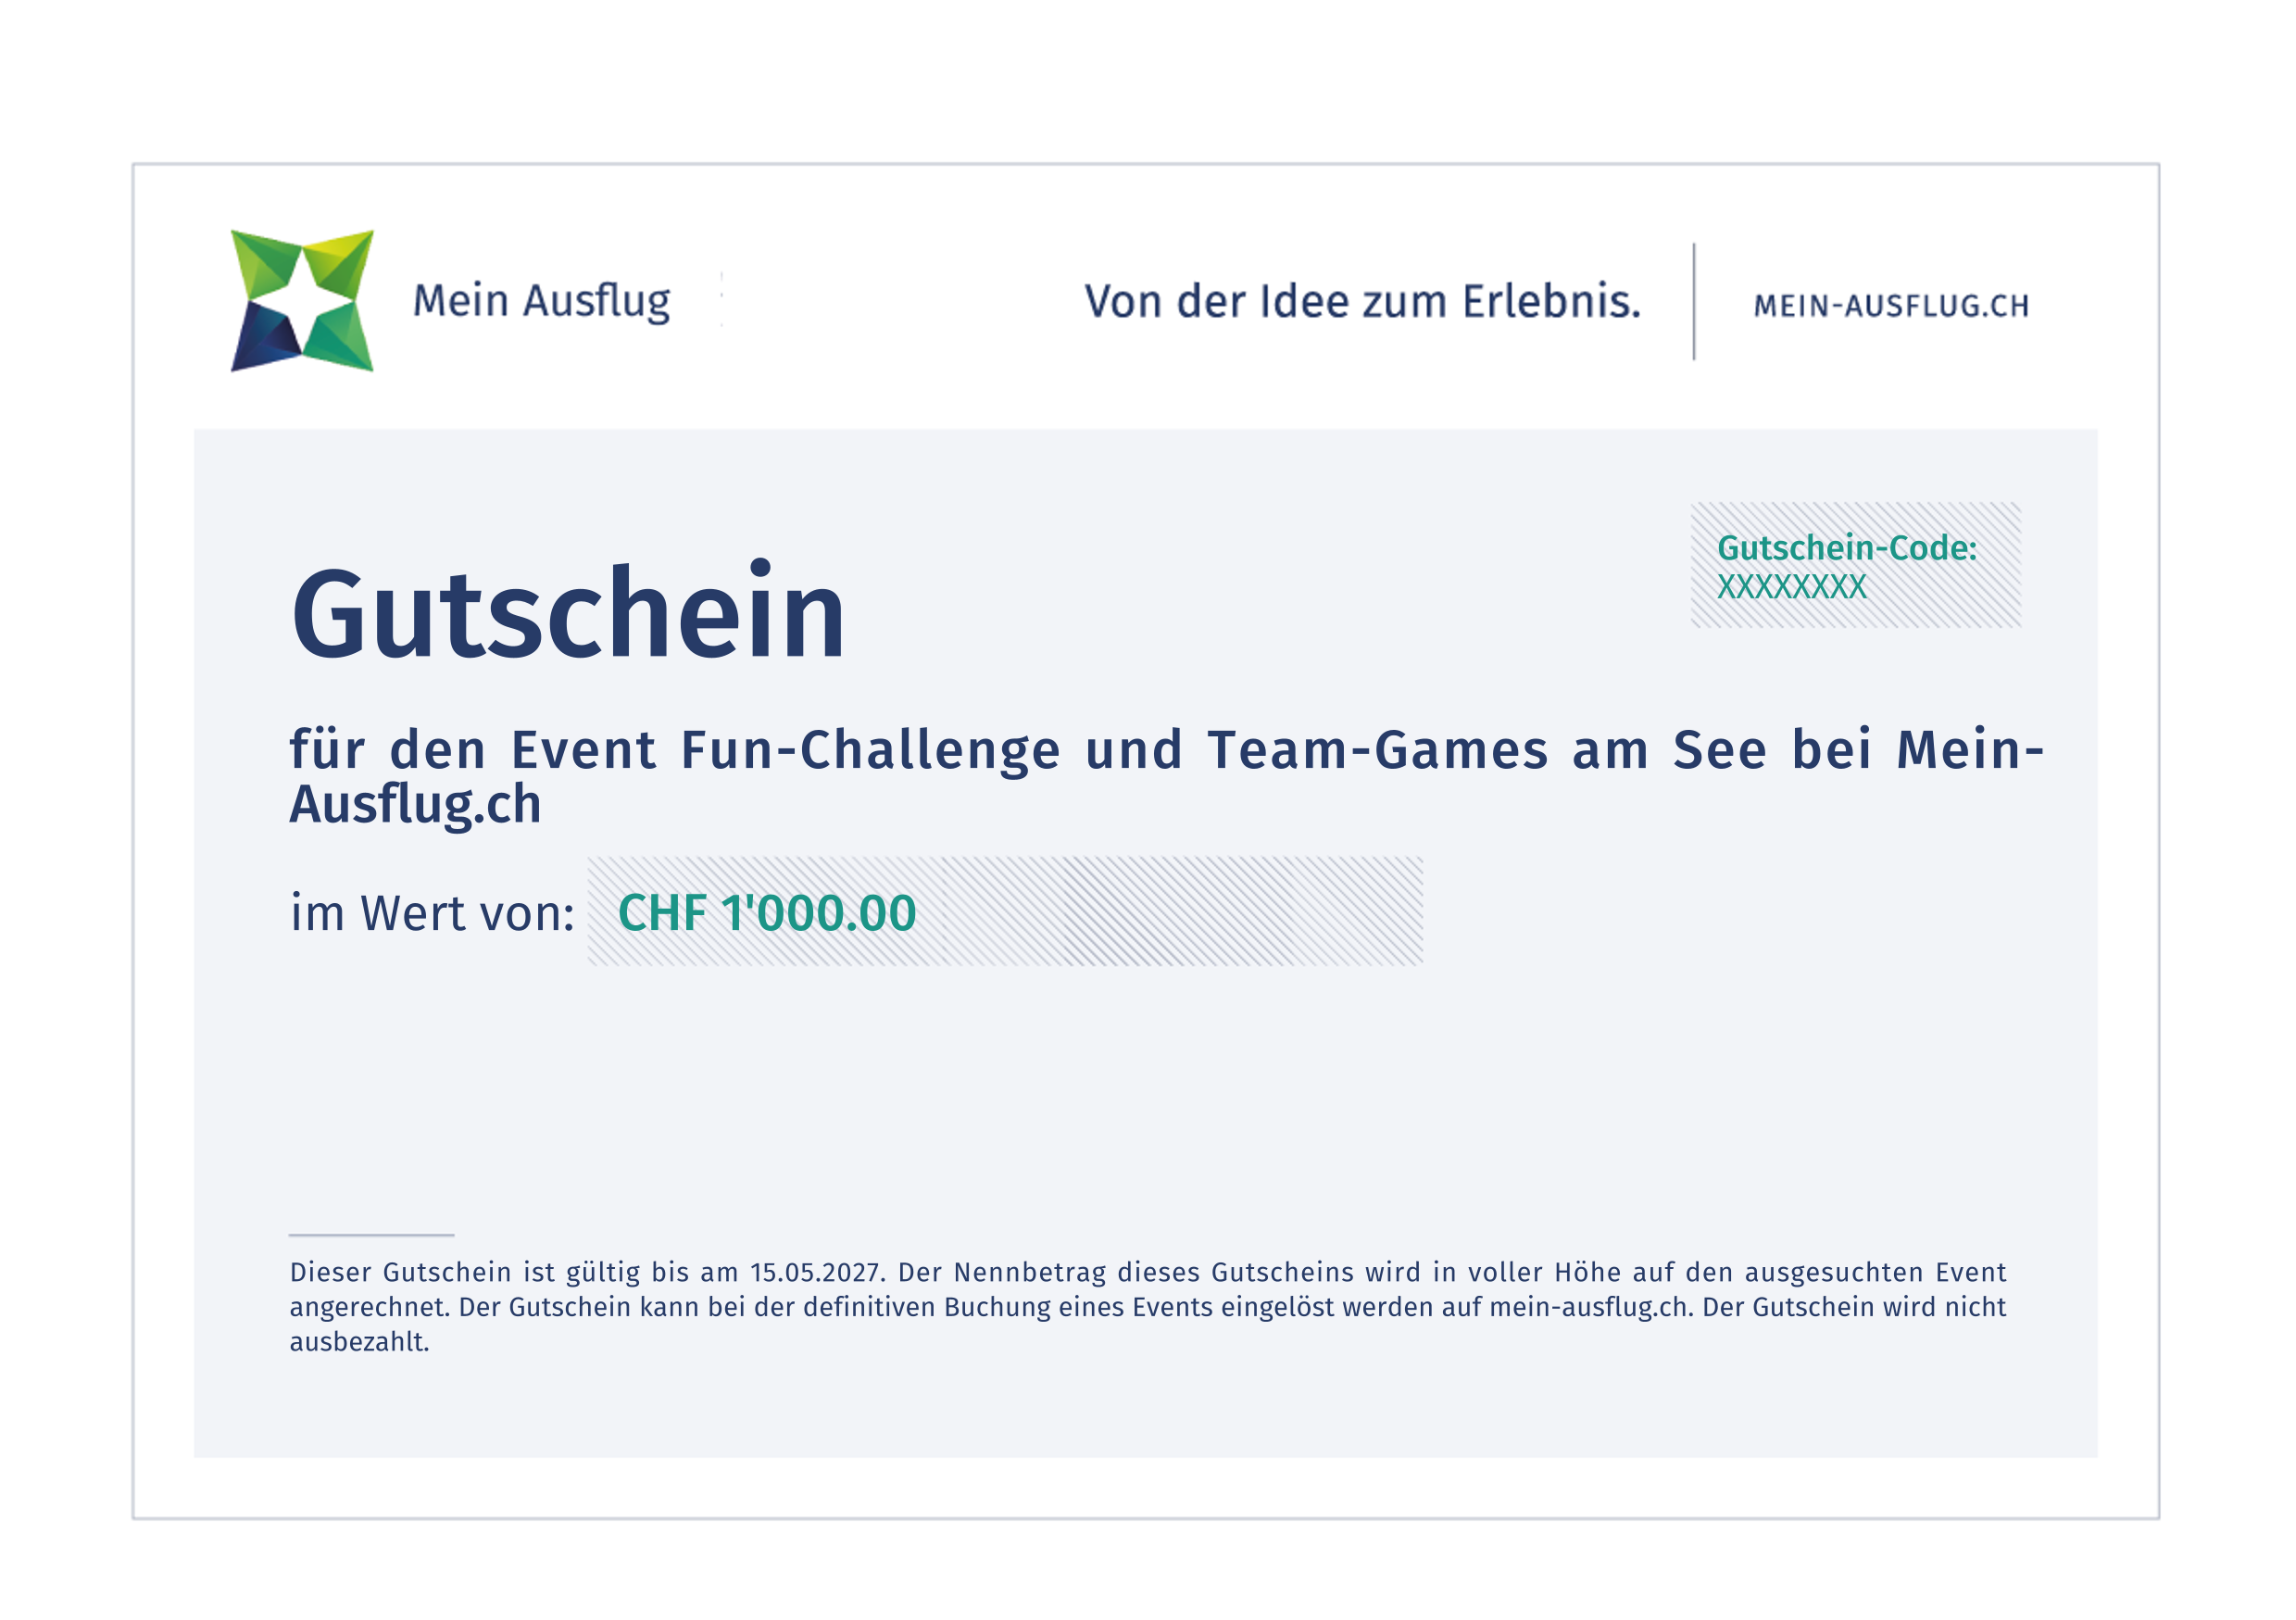 Fun-Challenge und Team-Games am See